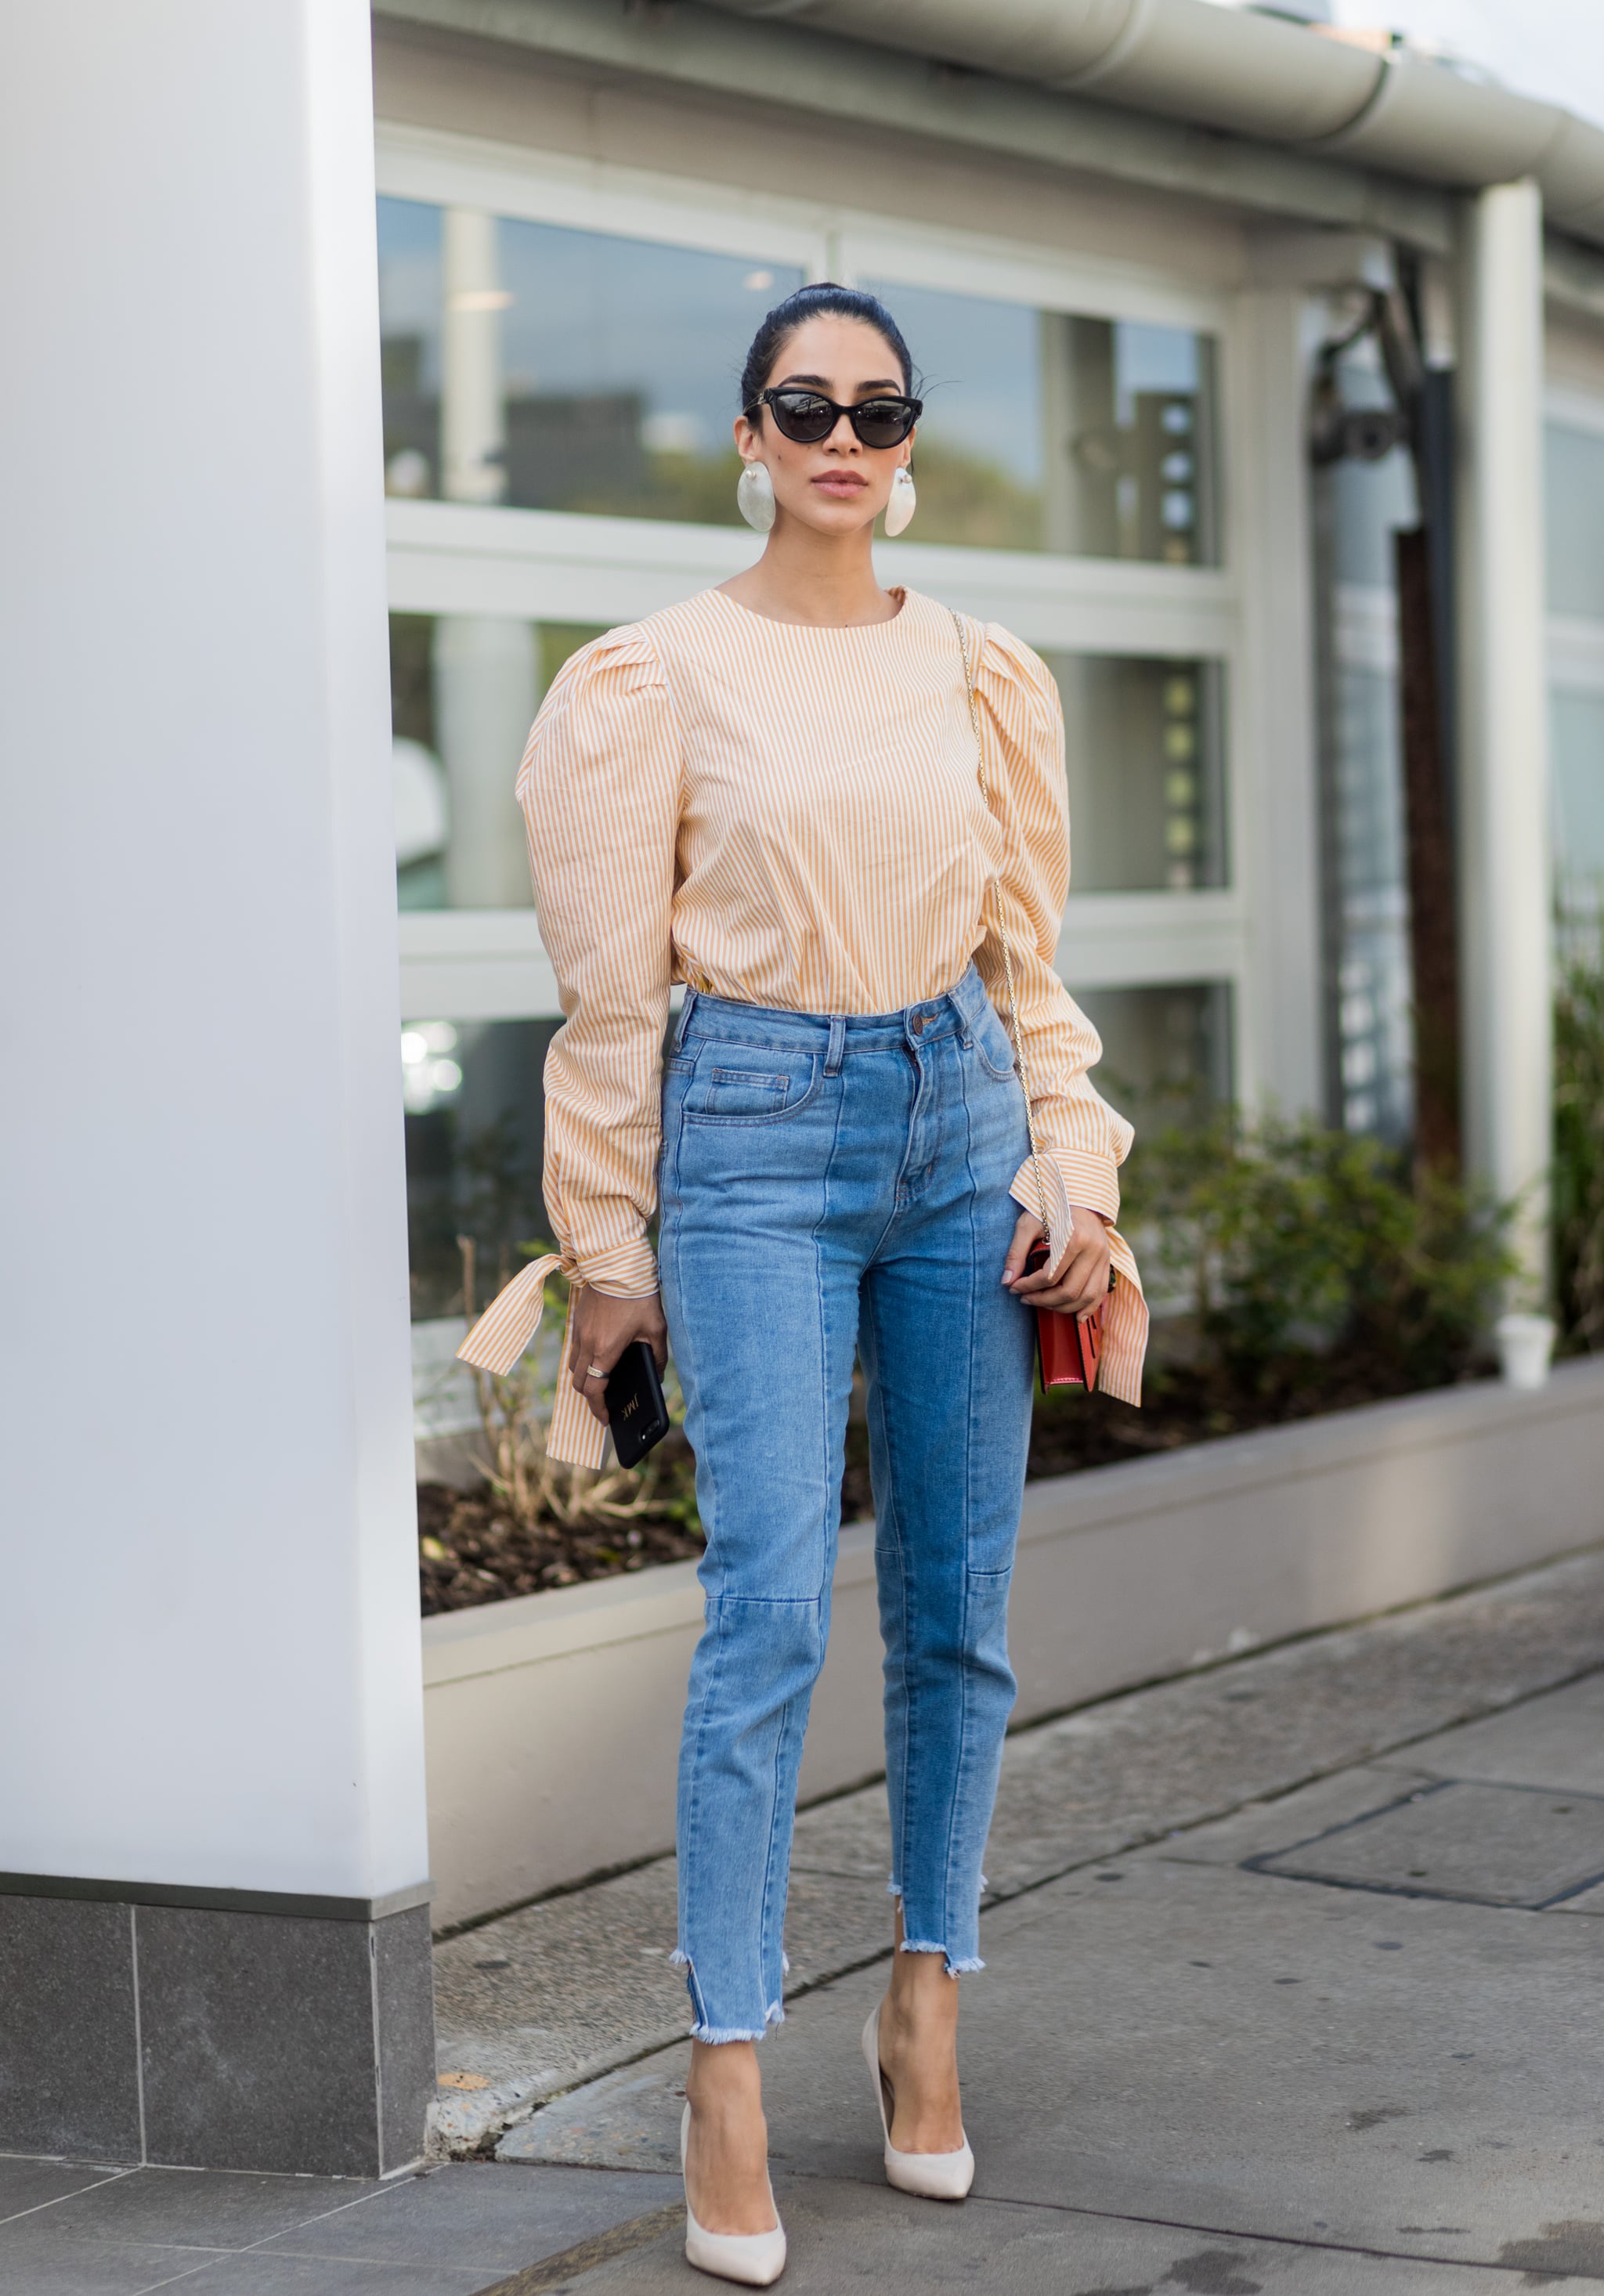 Jeans Outfit Ideas | POPSUGAR Fashion 